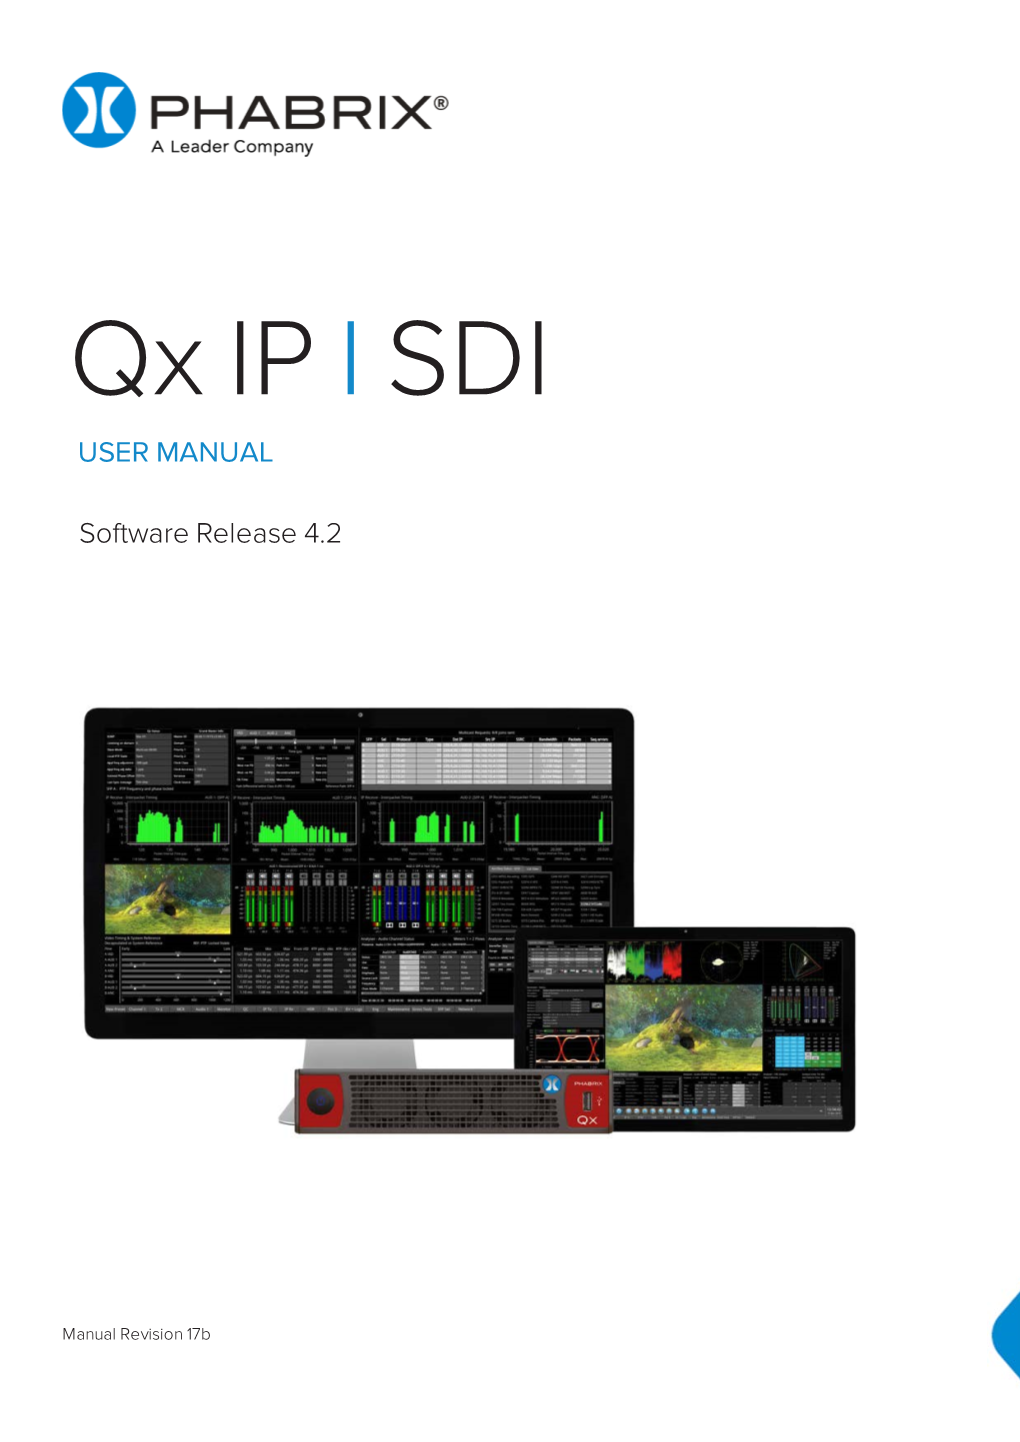 Qx IP I SDI USER MANUAL